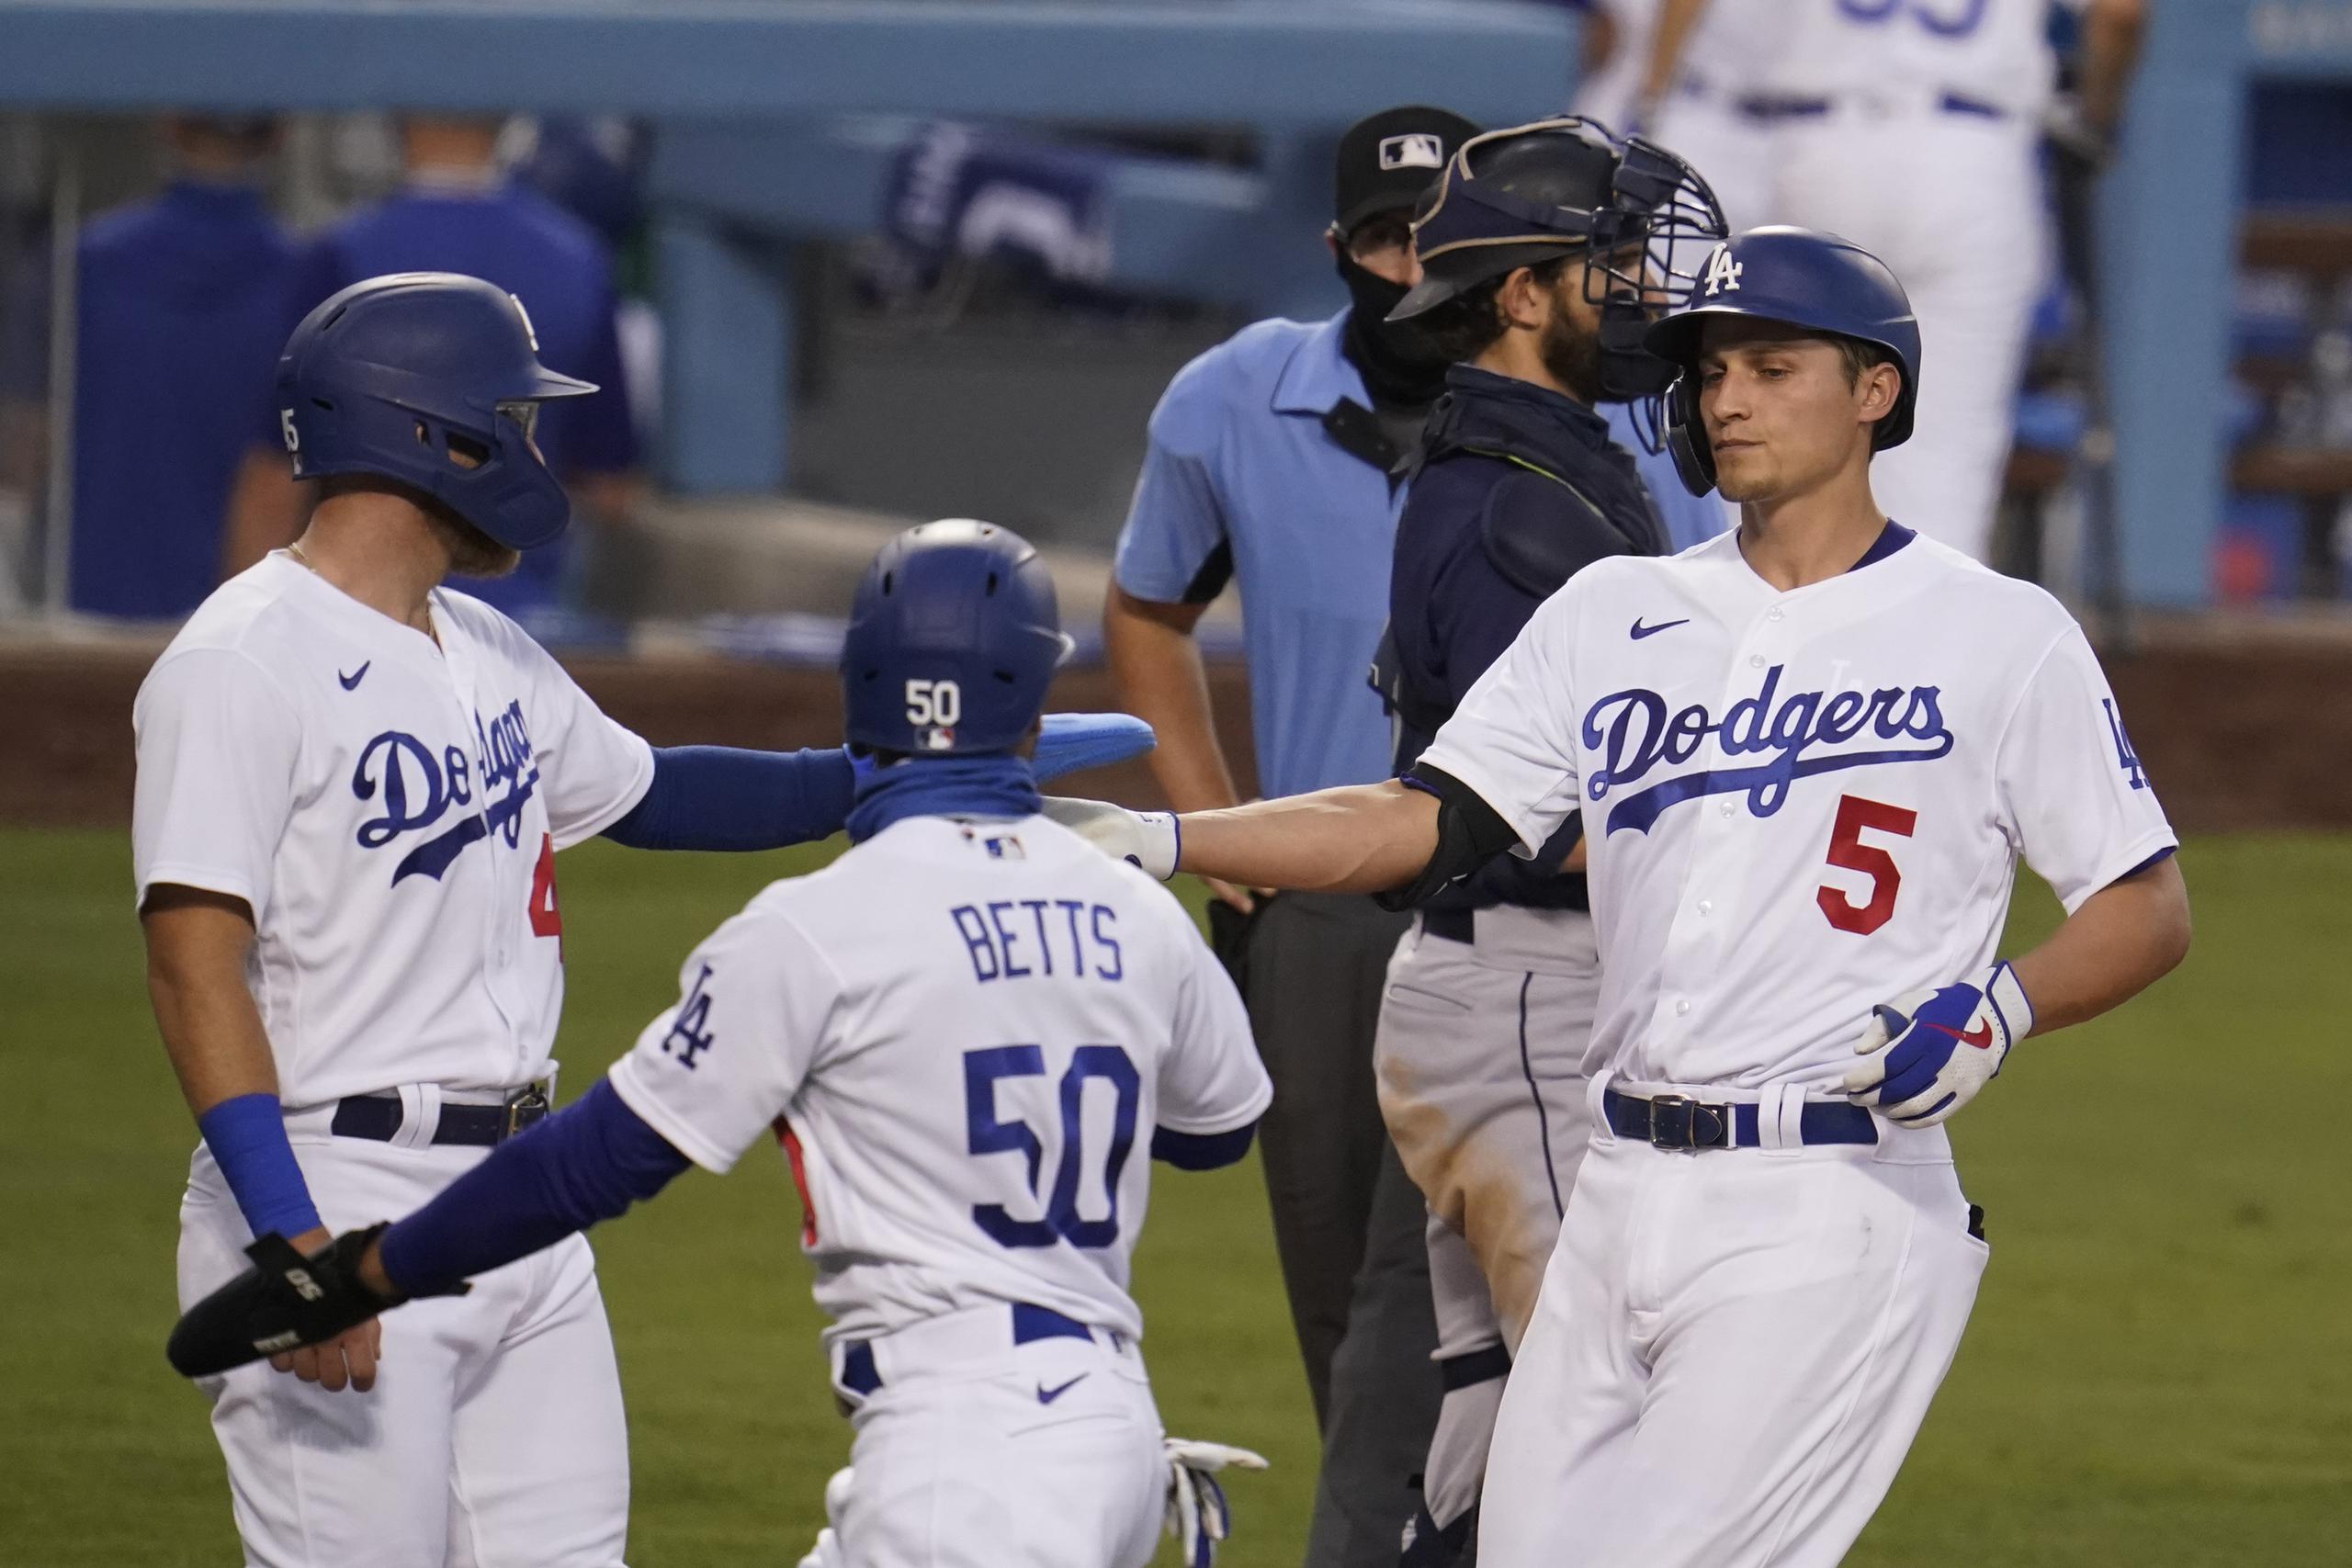 Corey Seager (5), de los Dodgers de Los Ángeles, celebra su cuadrangular de tres carreras con Mookie Betts (50) y Matt Beaty en el segundo inning del juego de la MLB que enfrentó a su equipo con los Marineros de Seattle.